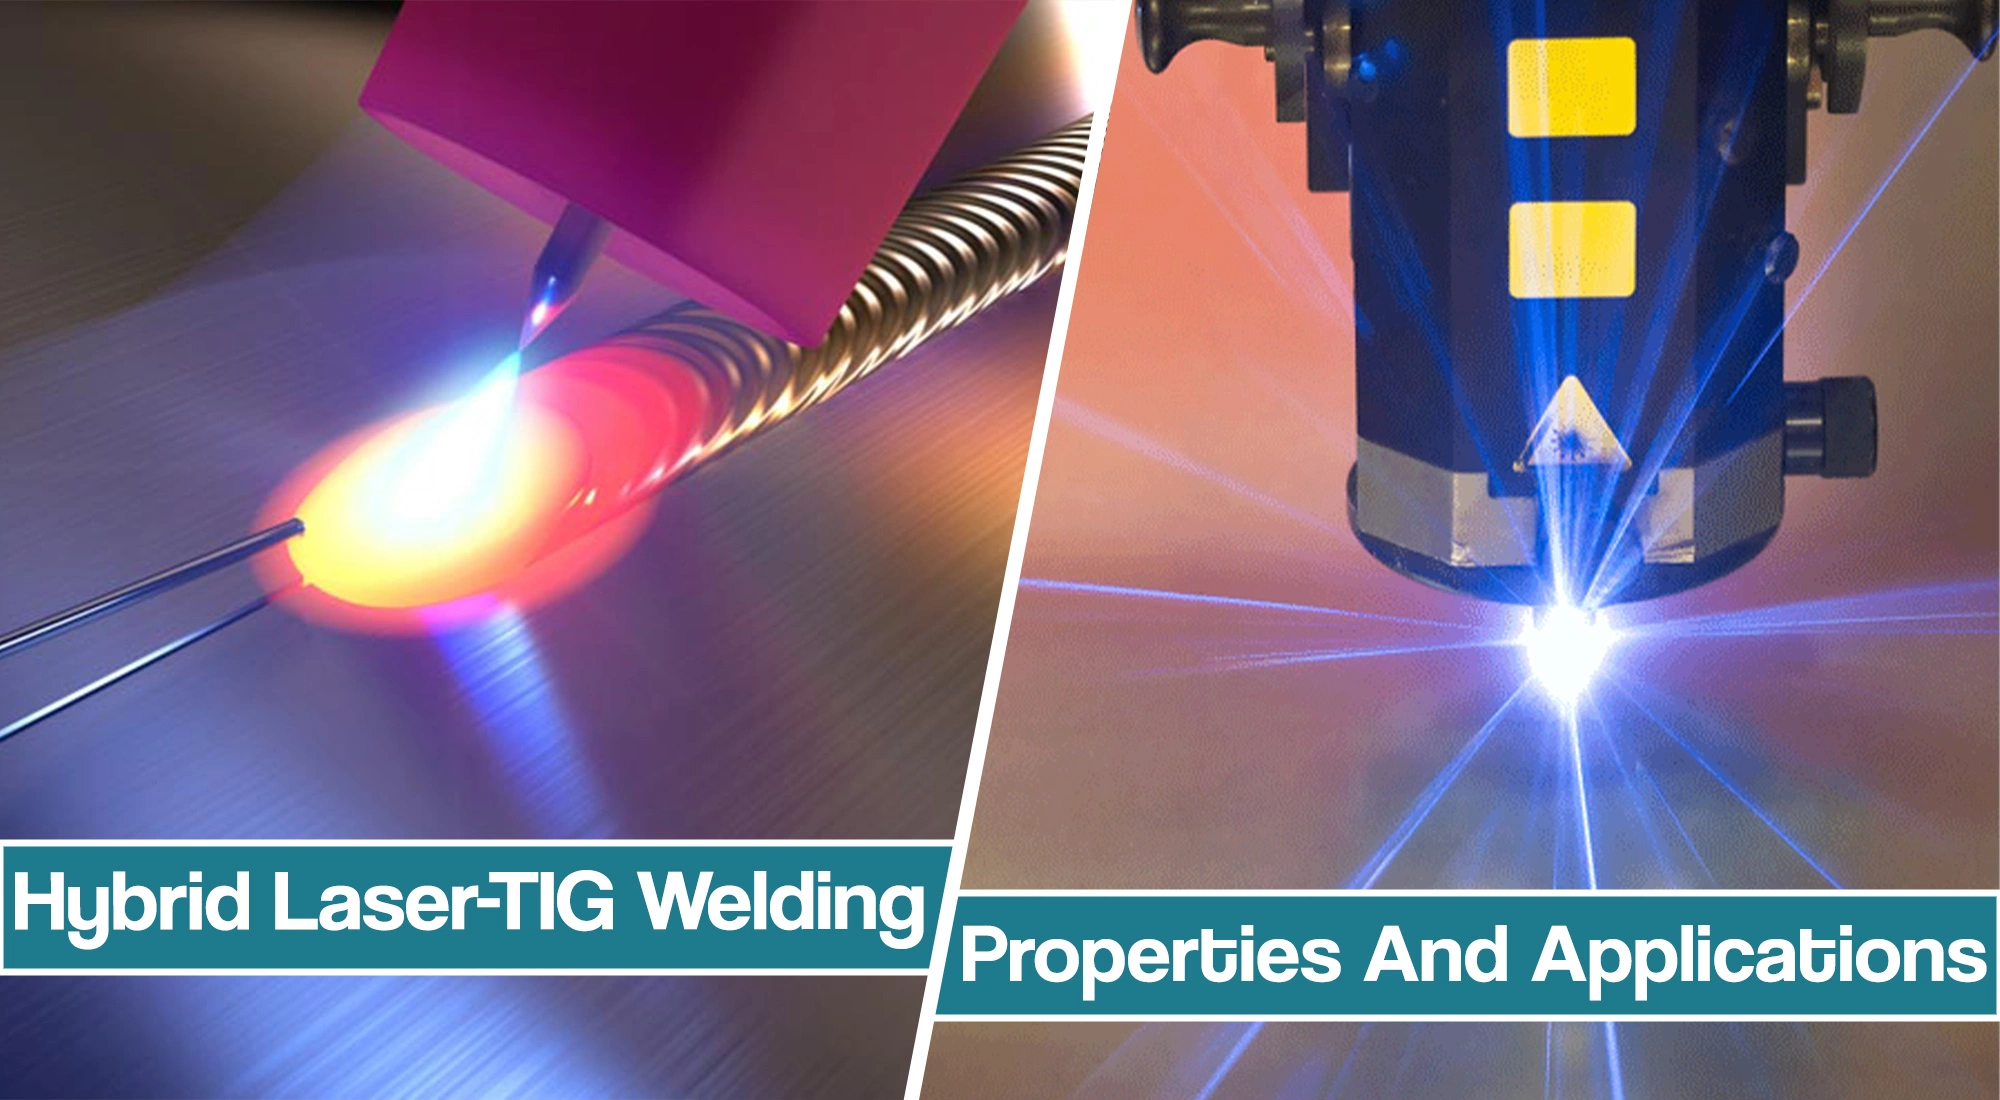 Hybrid Laser-TIG Welding – From CO2 Laser-TIG To Pulsed Laser-TIG